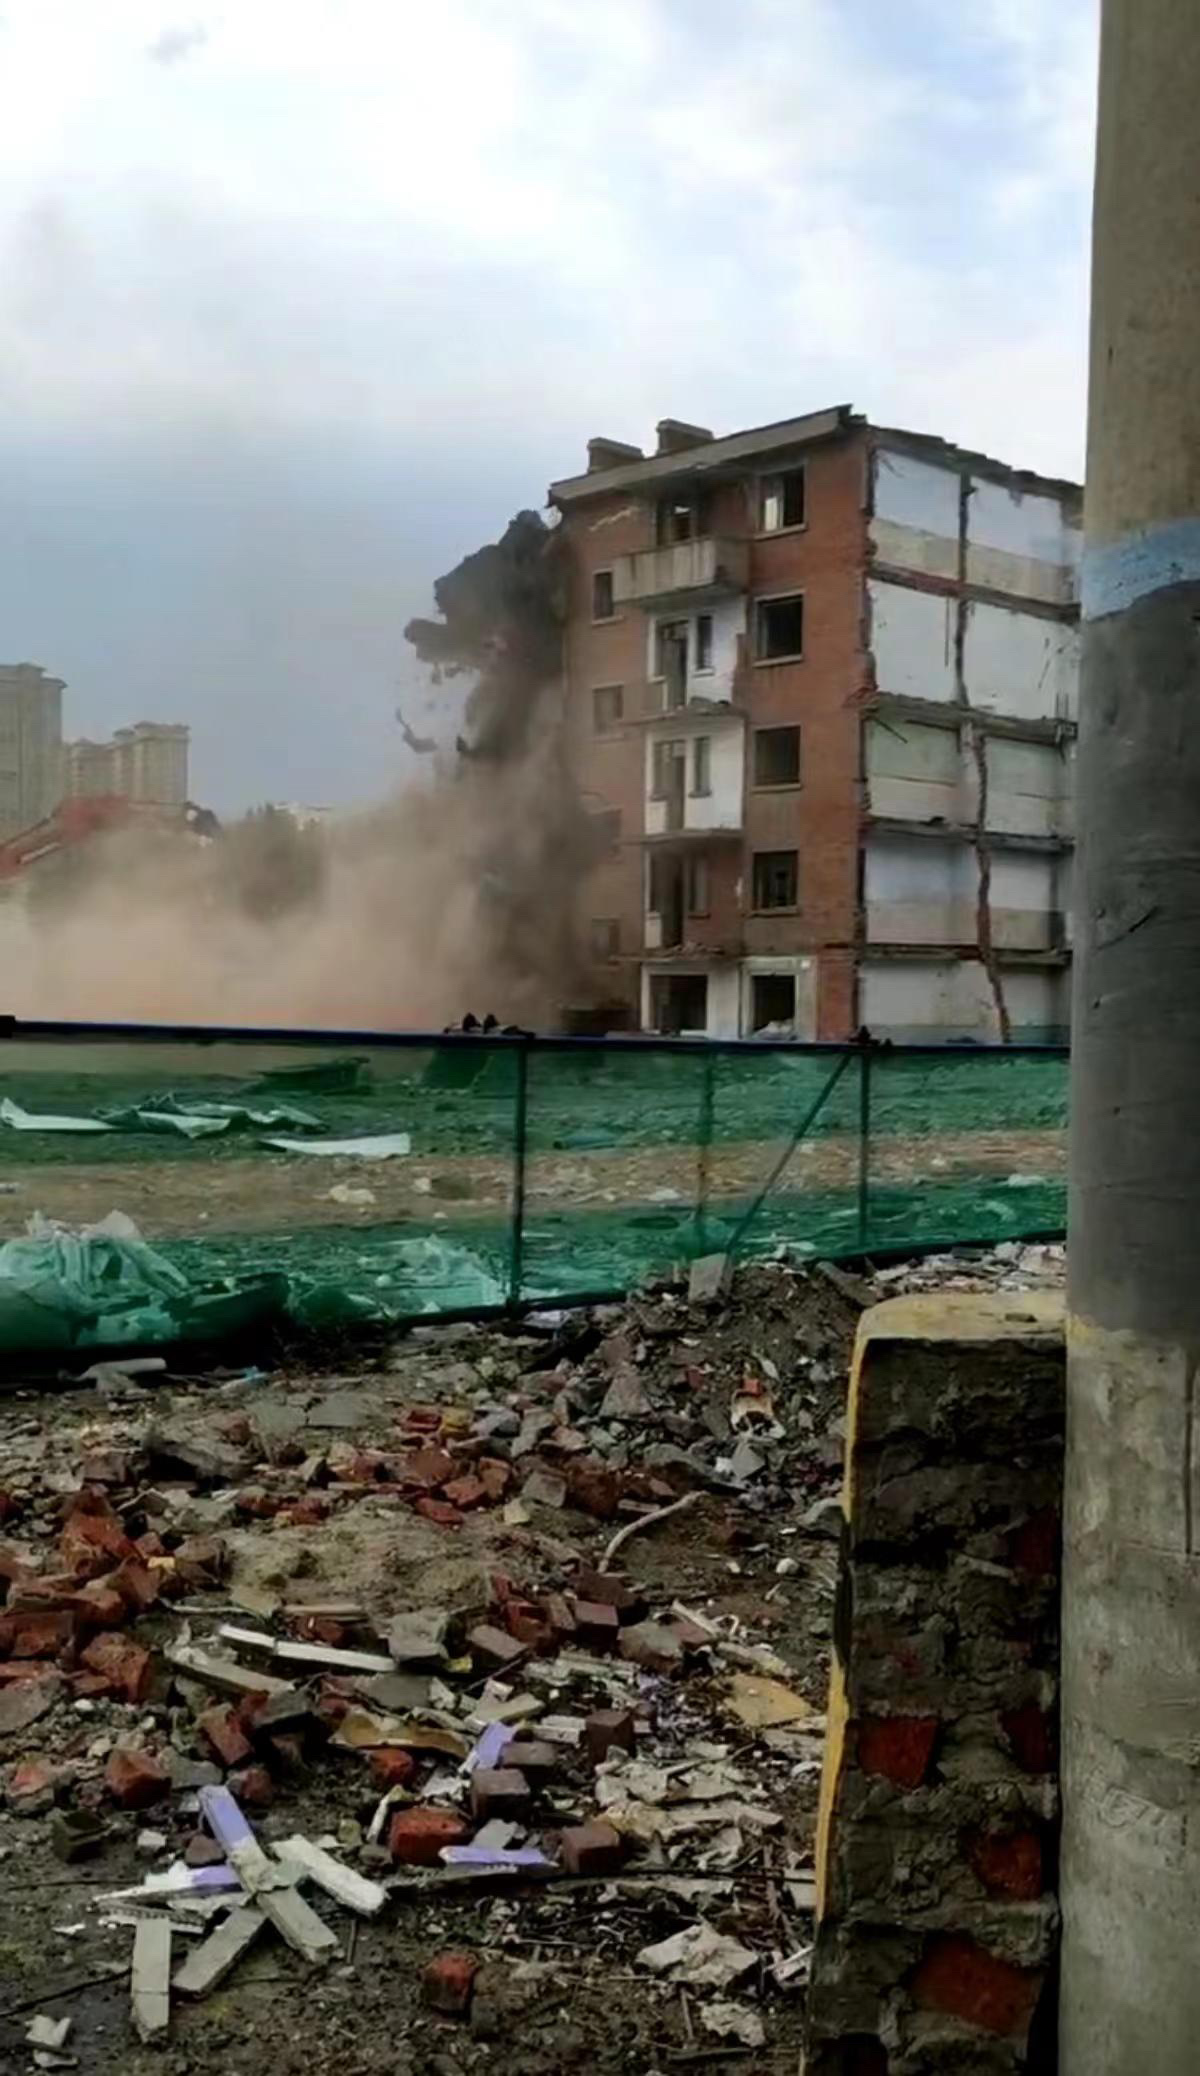 哈尔滨一办公楼坍塌 导致2人死亡 仍有2人被困 | 新唐人电视台